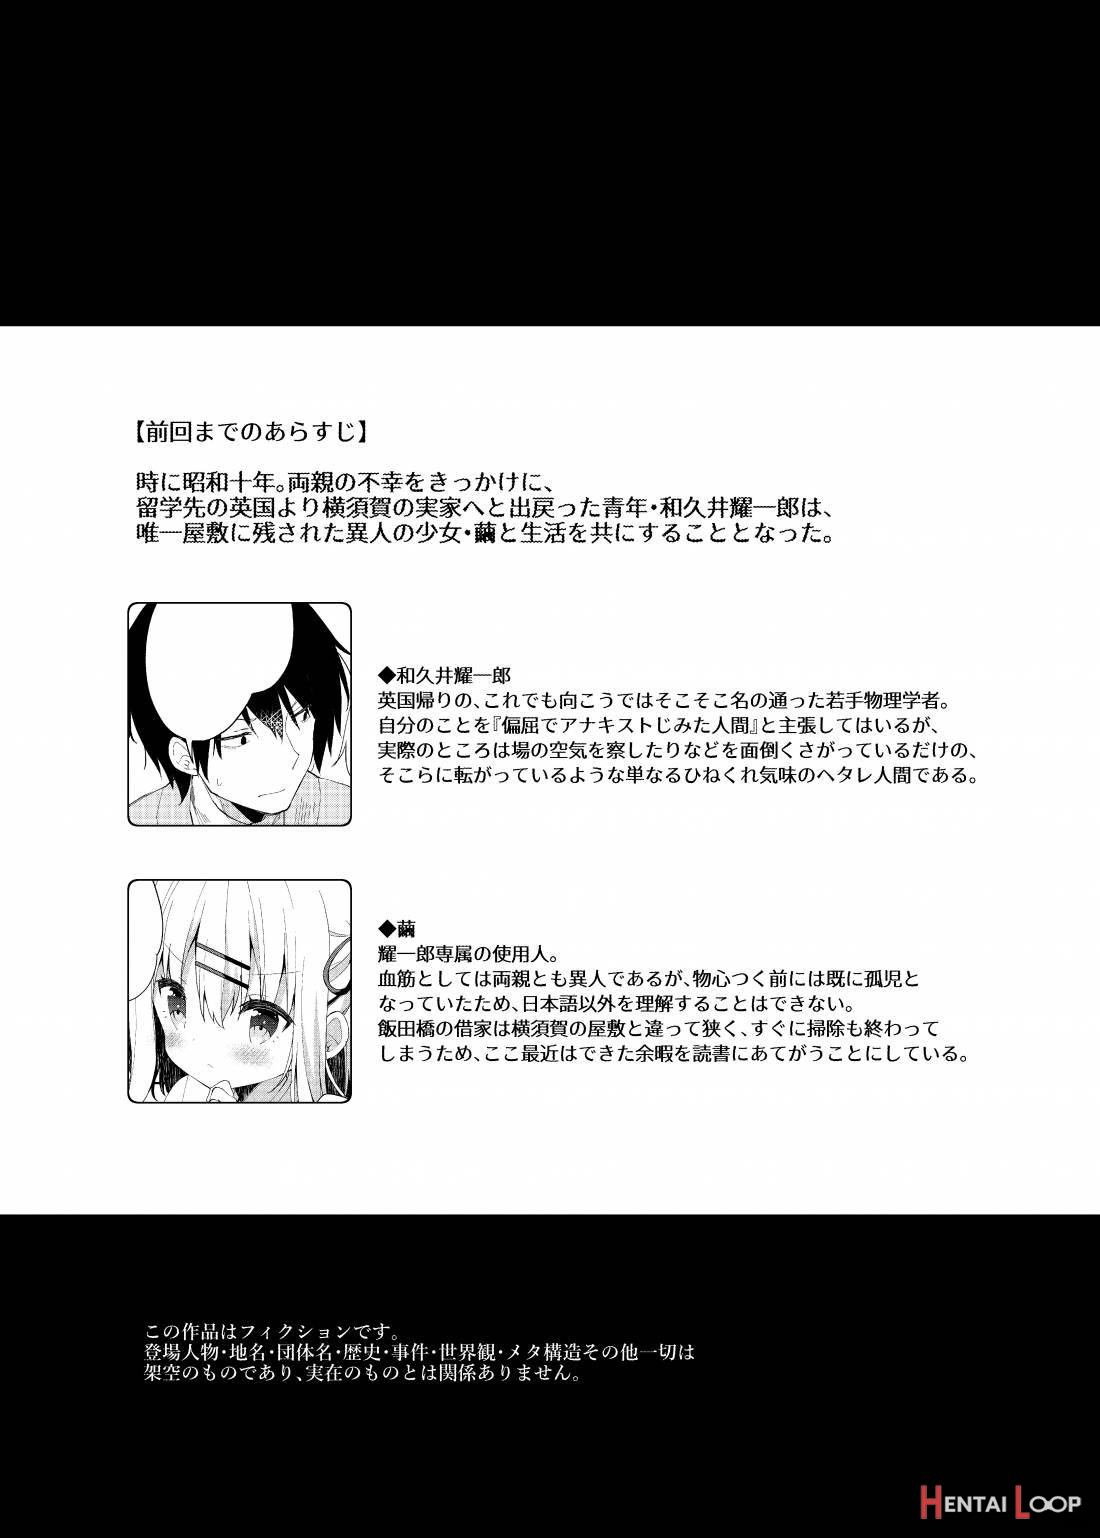 Onnanoko no Mayu 3 -Vita Sexualis- page 2